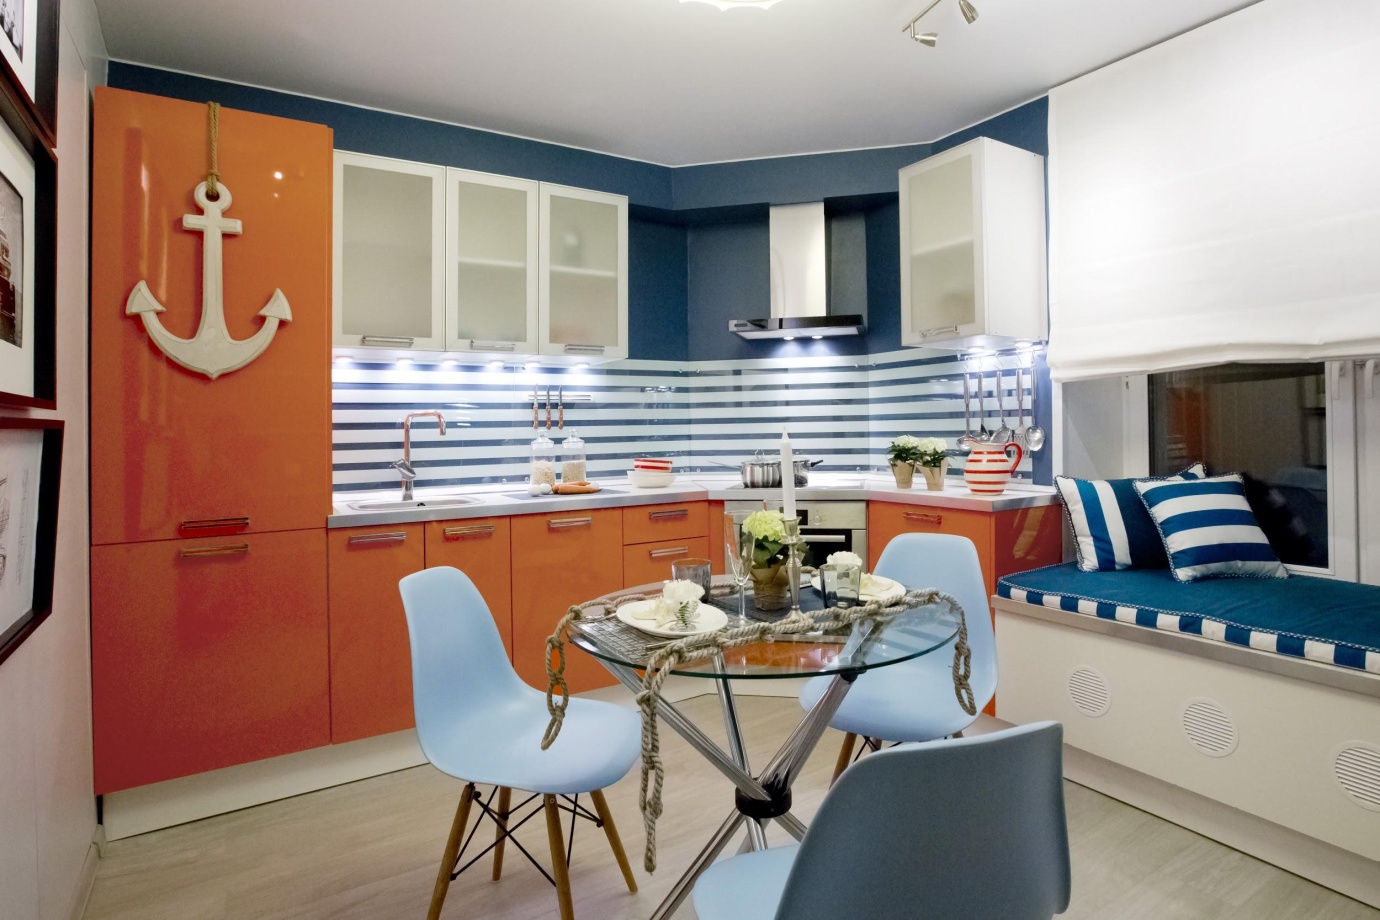 Кухня в средиземноморском стиле 2021: особенности оформления, виды отделки, фото дизайна интерьера